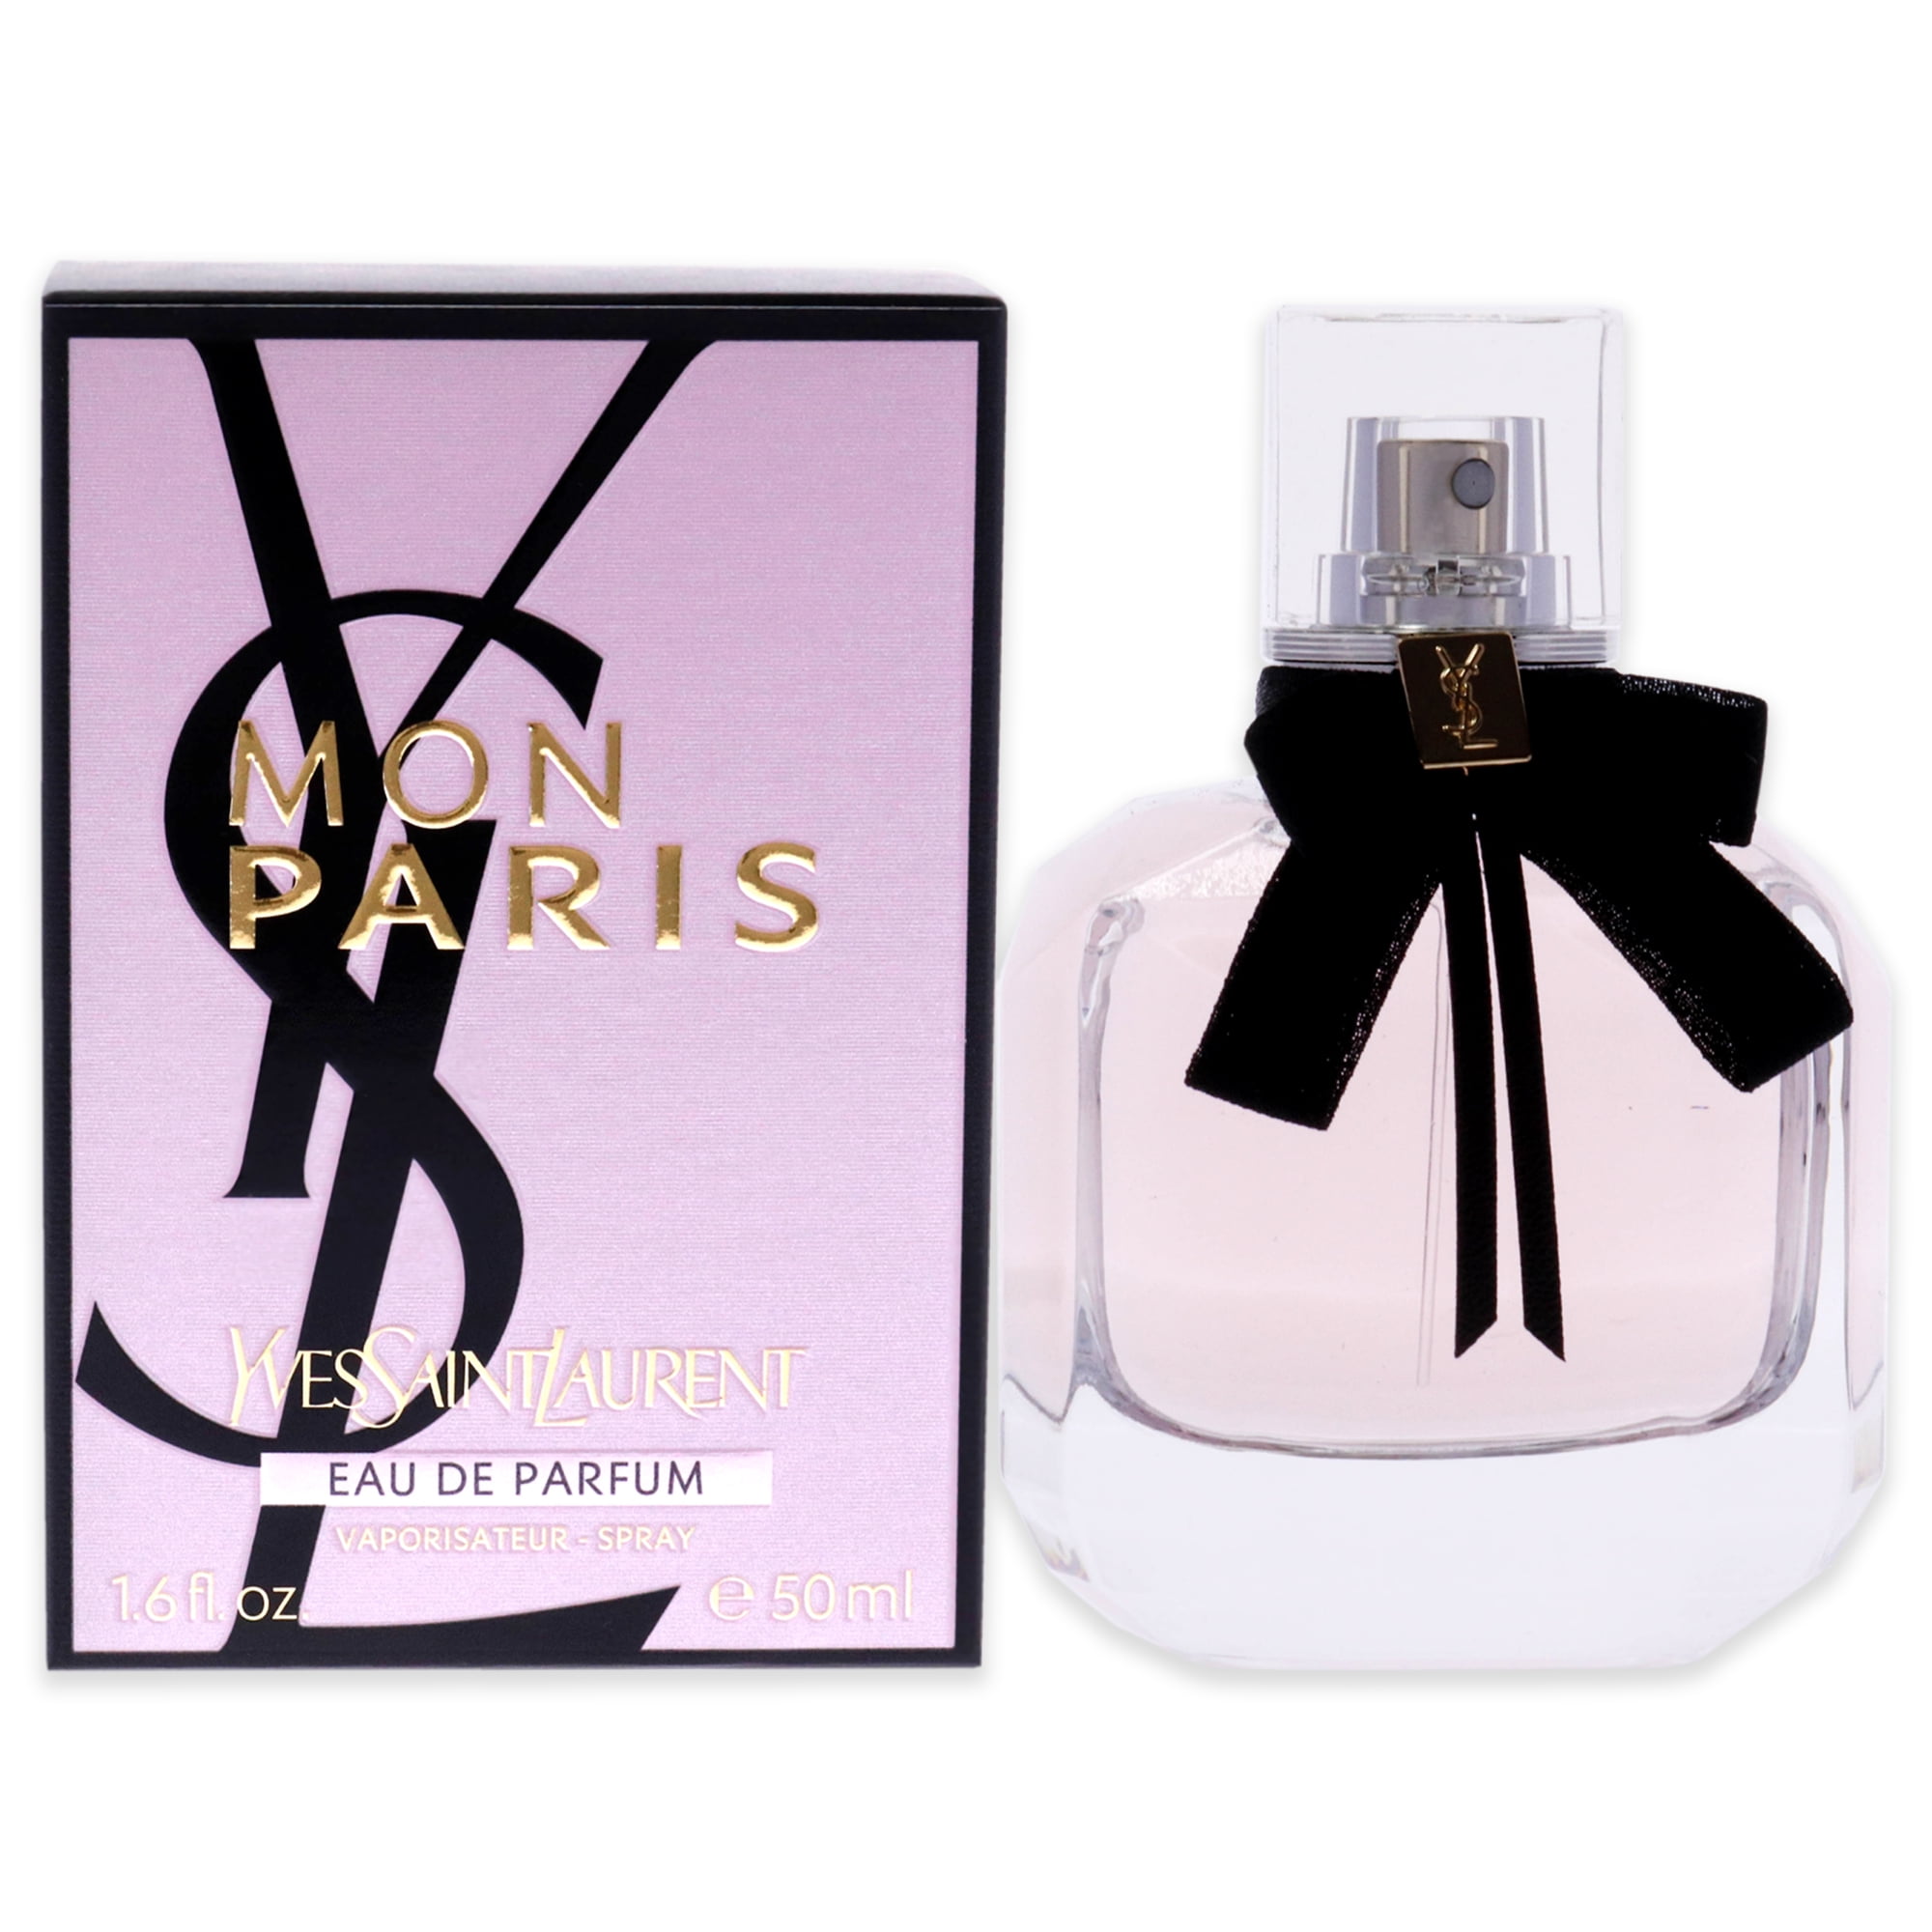 Yves Saint Laurent Mon Paris Eau de Parfum for Women, 1.6 oz - Walmart.com